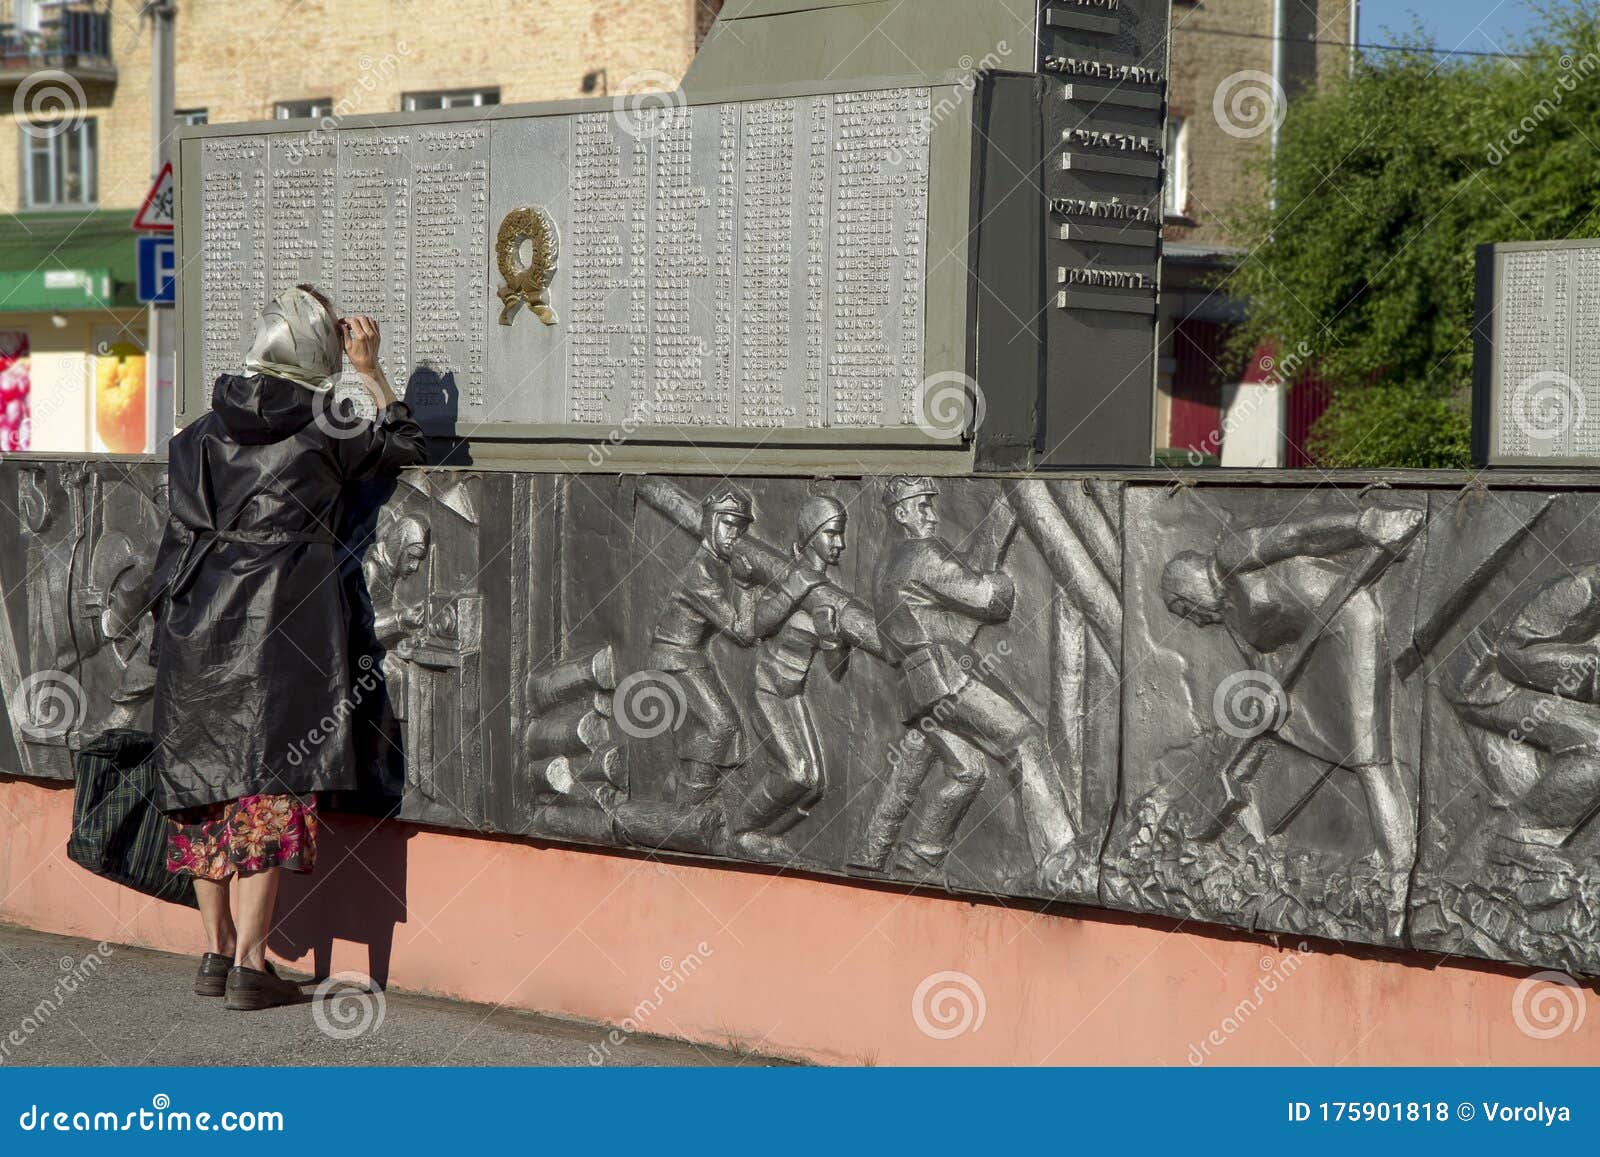 Центральная площадь города belovo женщина на обелиске солдатам, погибшим